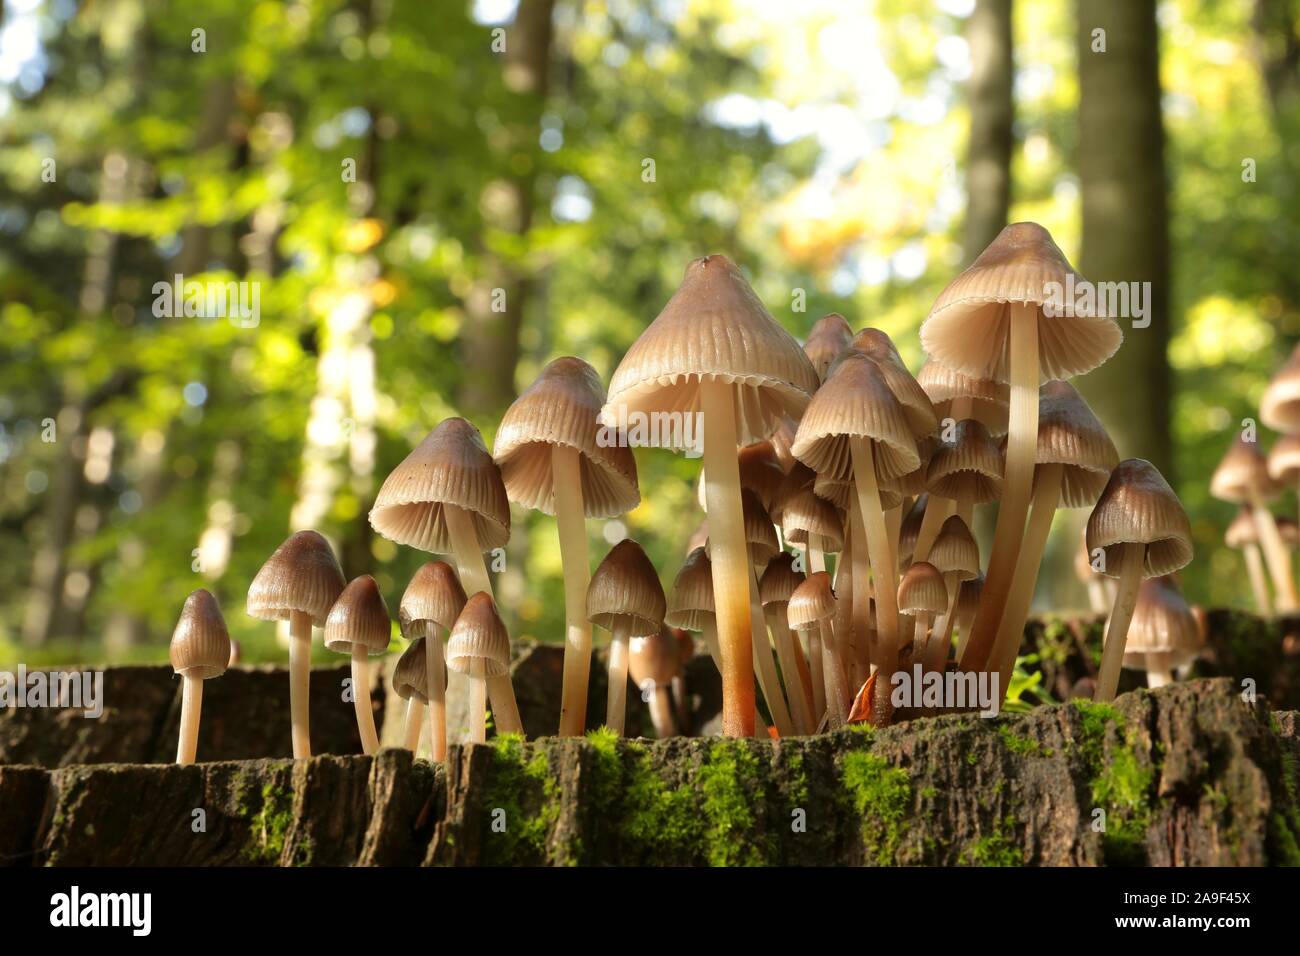 Familie der Pilze auf einem Baumstamm im Herbst Wald. Makro- und Nahaufnahmen von Pflanzen im Wald. Stockfoto